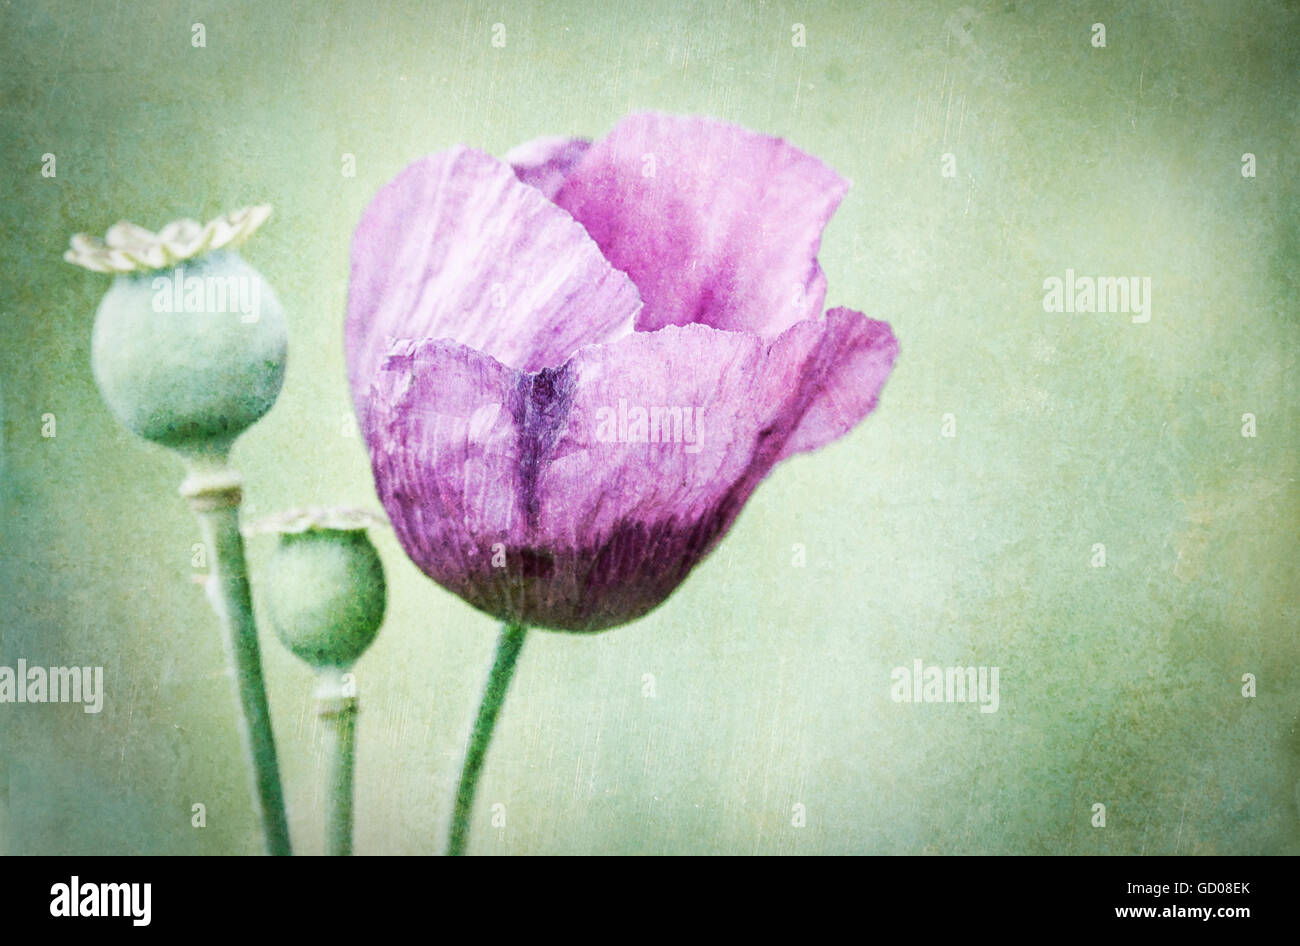 Manipulado digitalmente la imagen de una flor y semillas de adormidera púrpura jefes fotografiado contra un fondo verde pastel Foto de stock